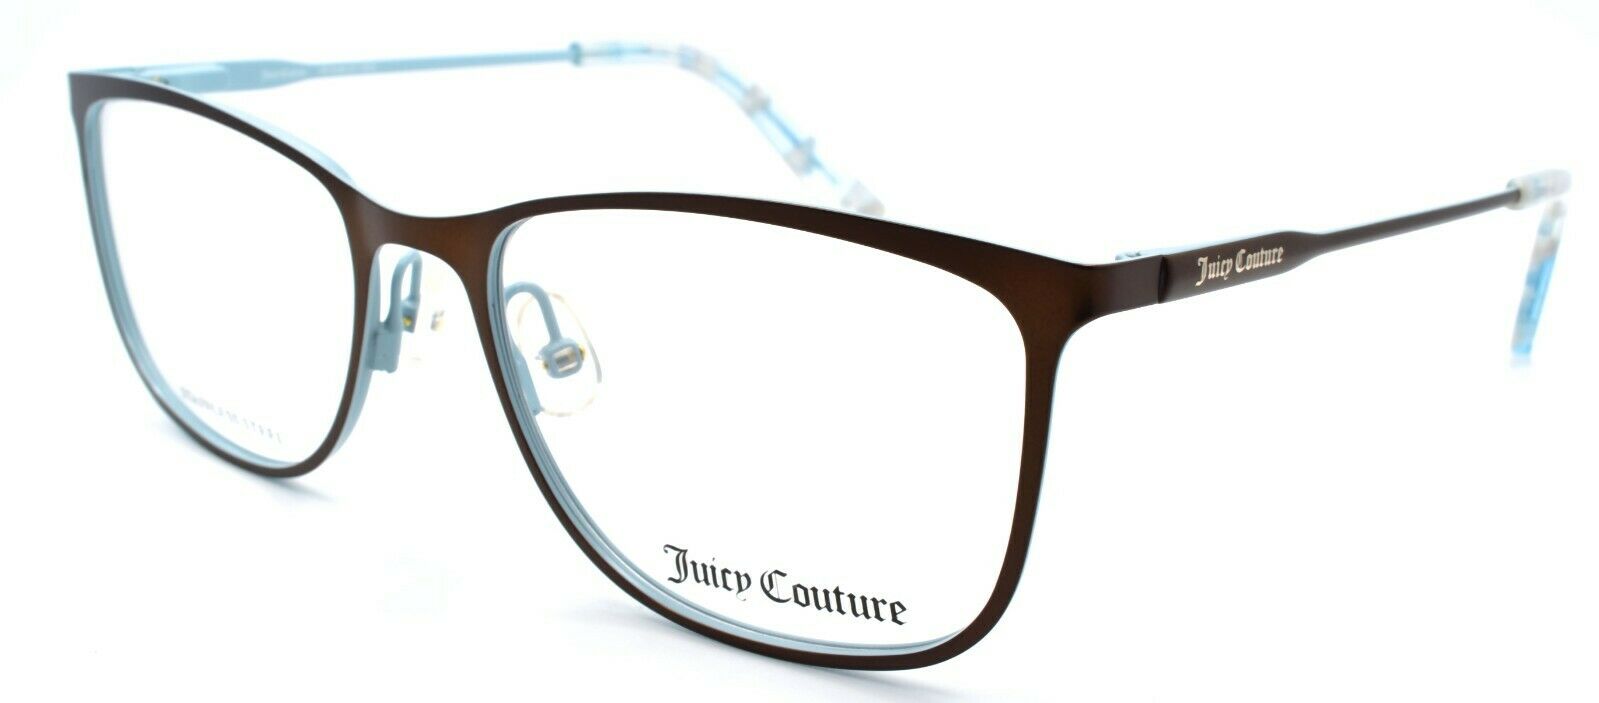 1-Juicy Couture JU178 3LG Women's Eyeglasses Frames 52-17-140 Brown / Blue-716736049687-IKSpecs